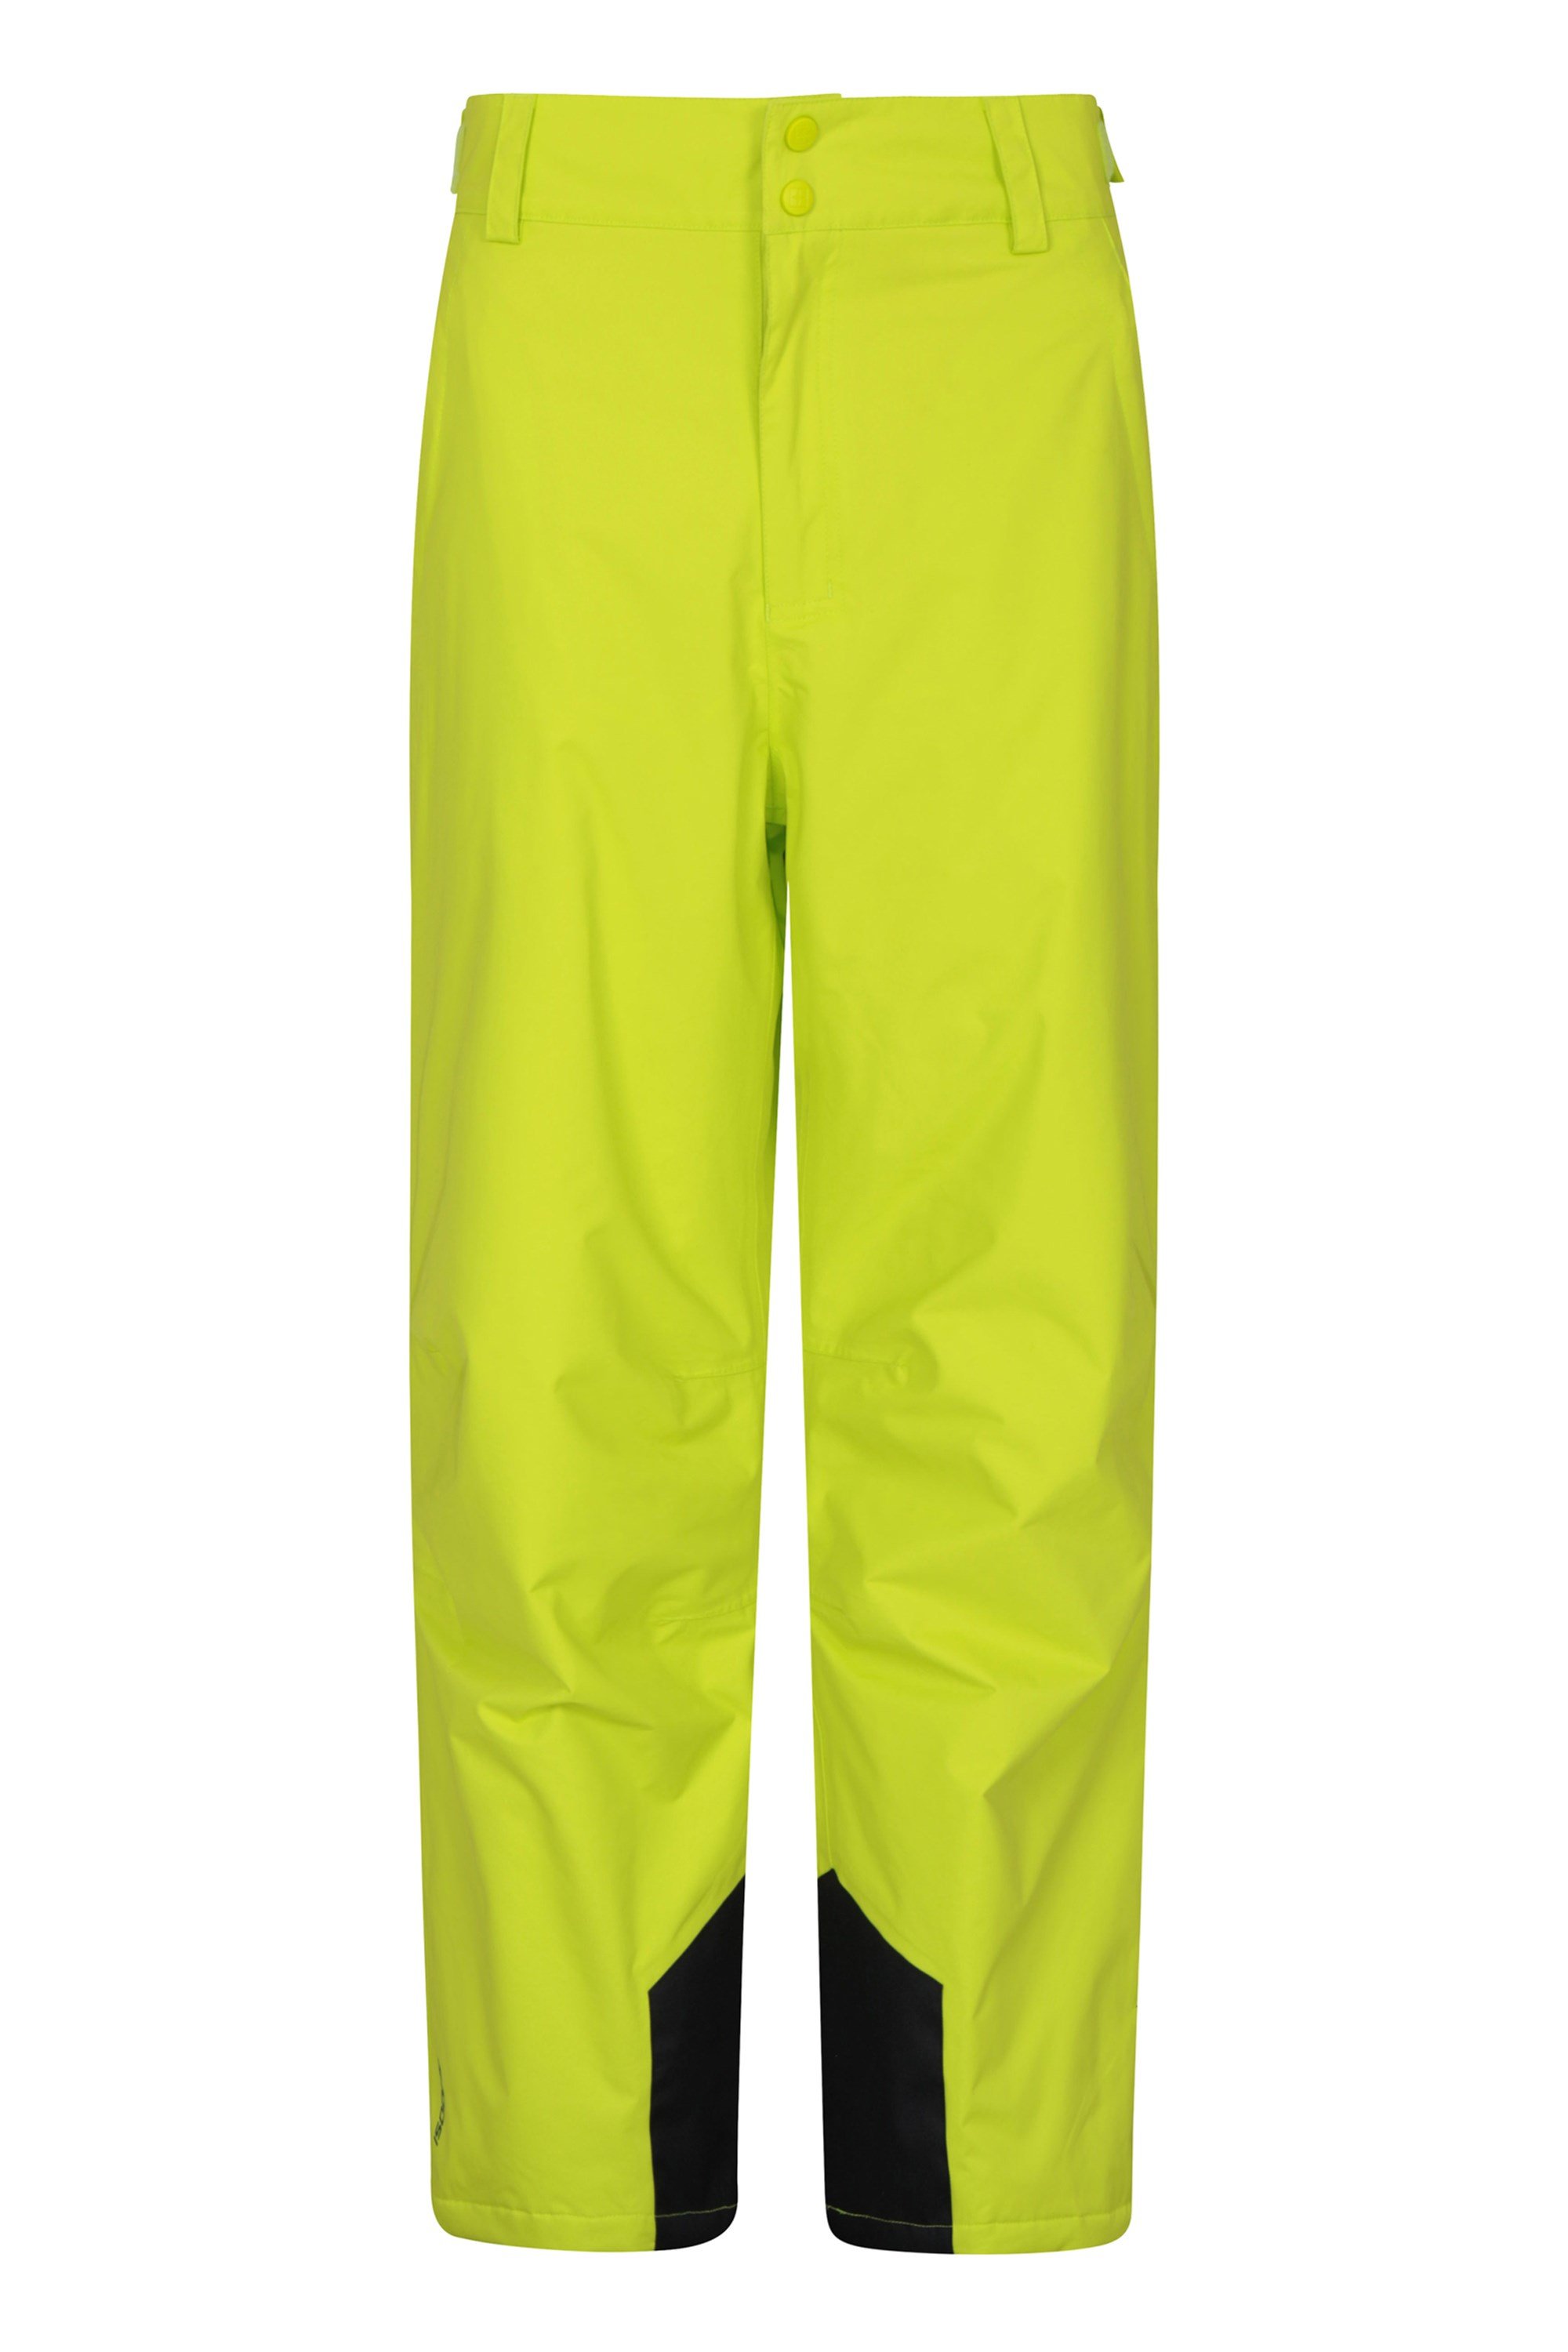 Pantalon de Ski hommes Gravity Short - Vert